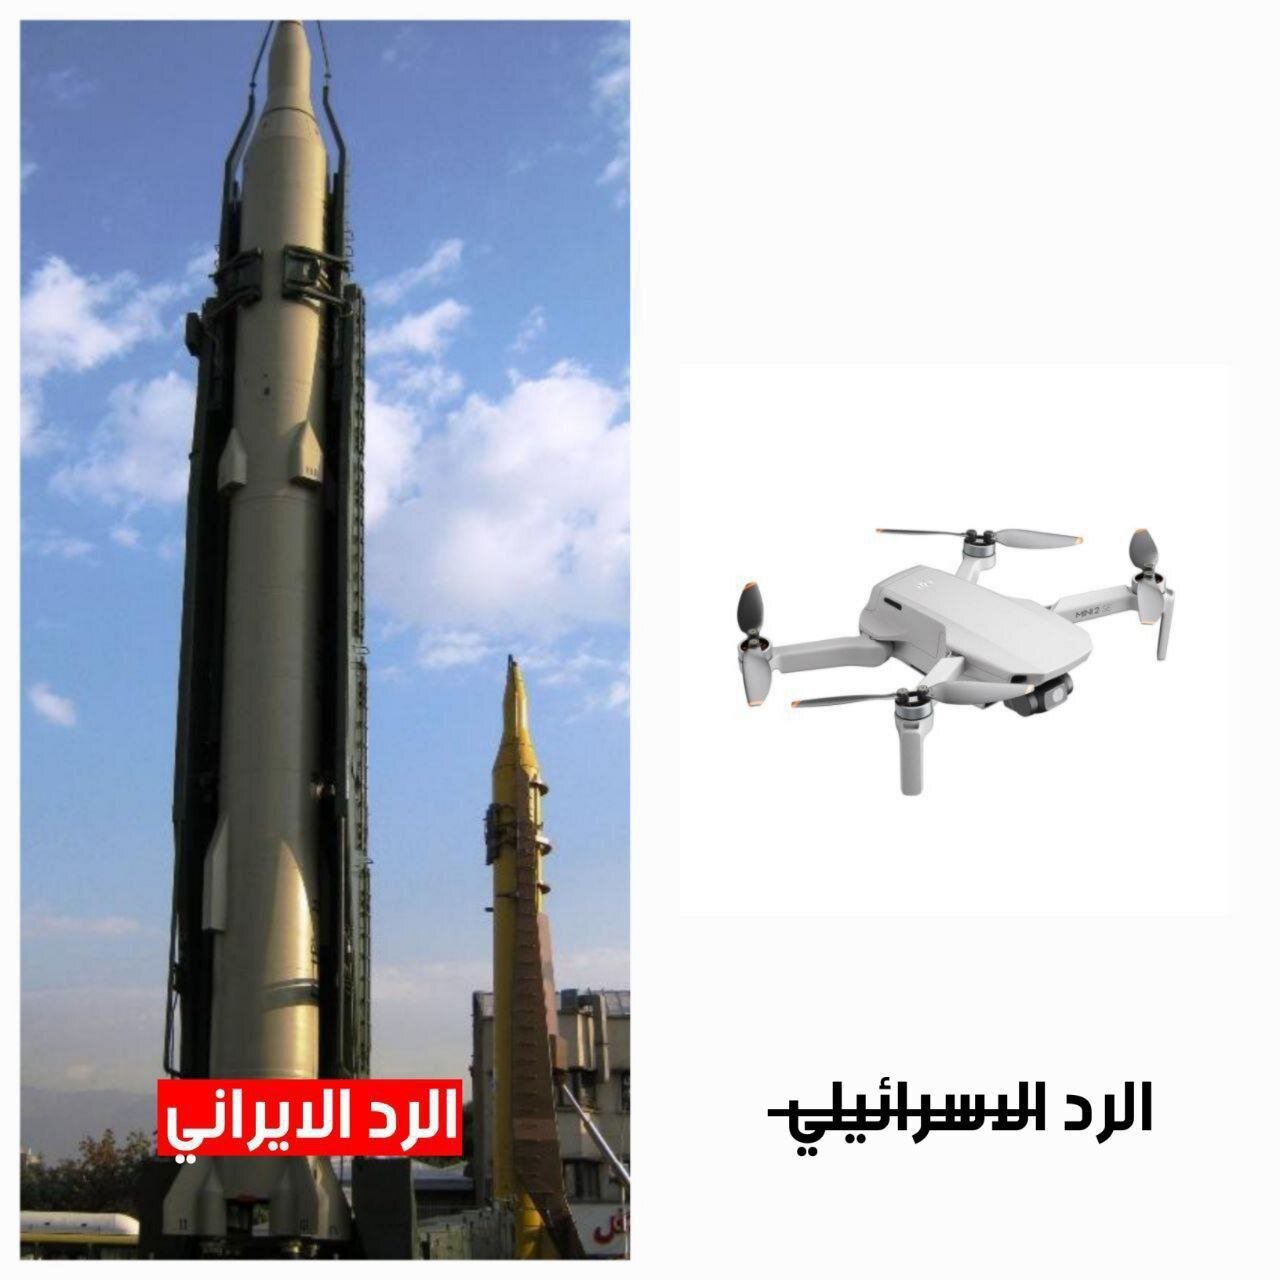 مقام ایرانی به رویترز: هیچگونه حمله موشکی به خاک ایران صورت نگرفته /المیادین: چیزی جز یک حباب رسانه ای نبود /تمسخر اسرائیل از سوی رسانه های عربی 